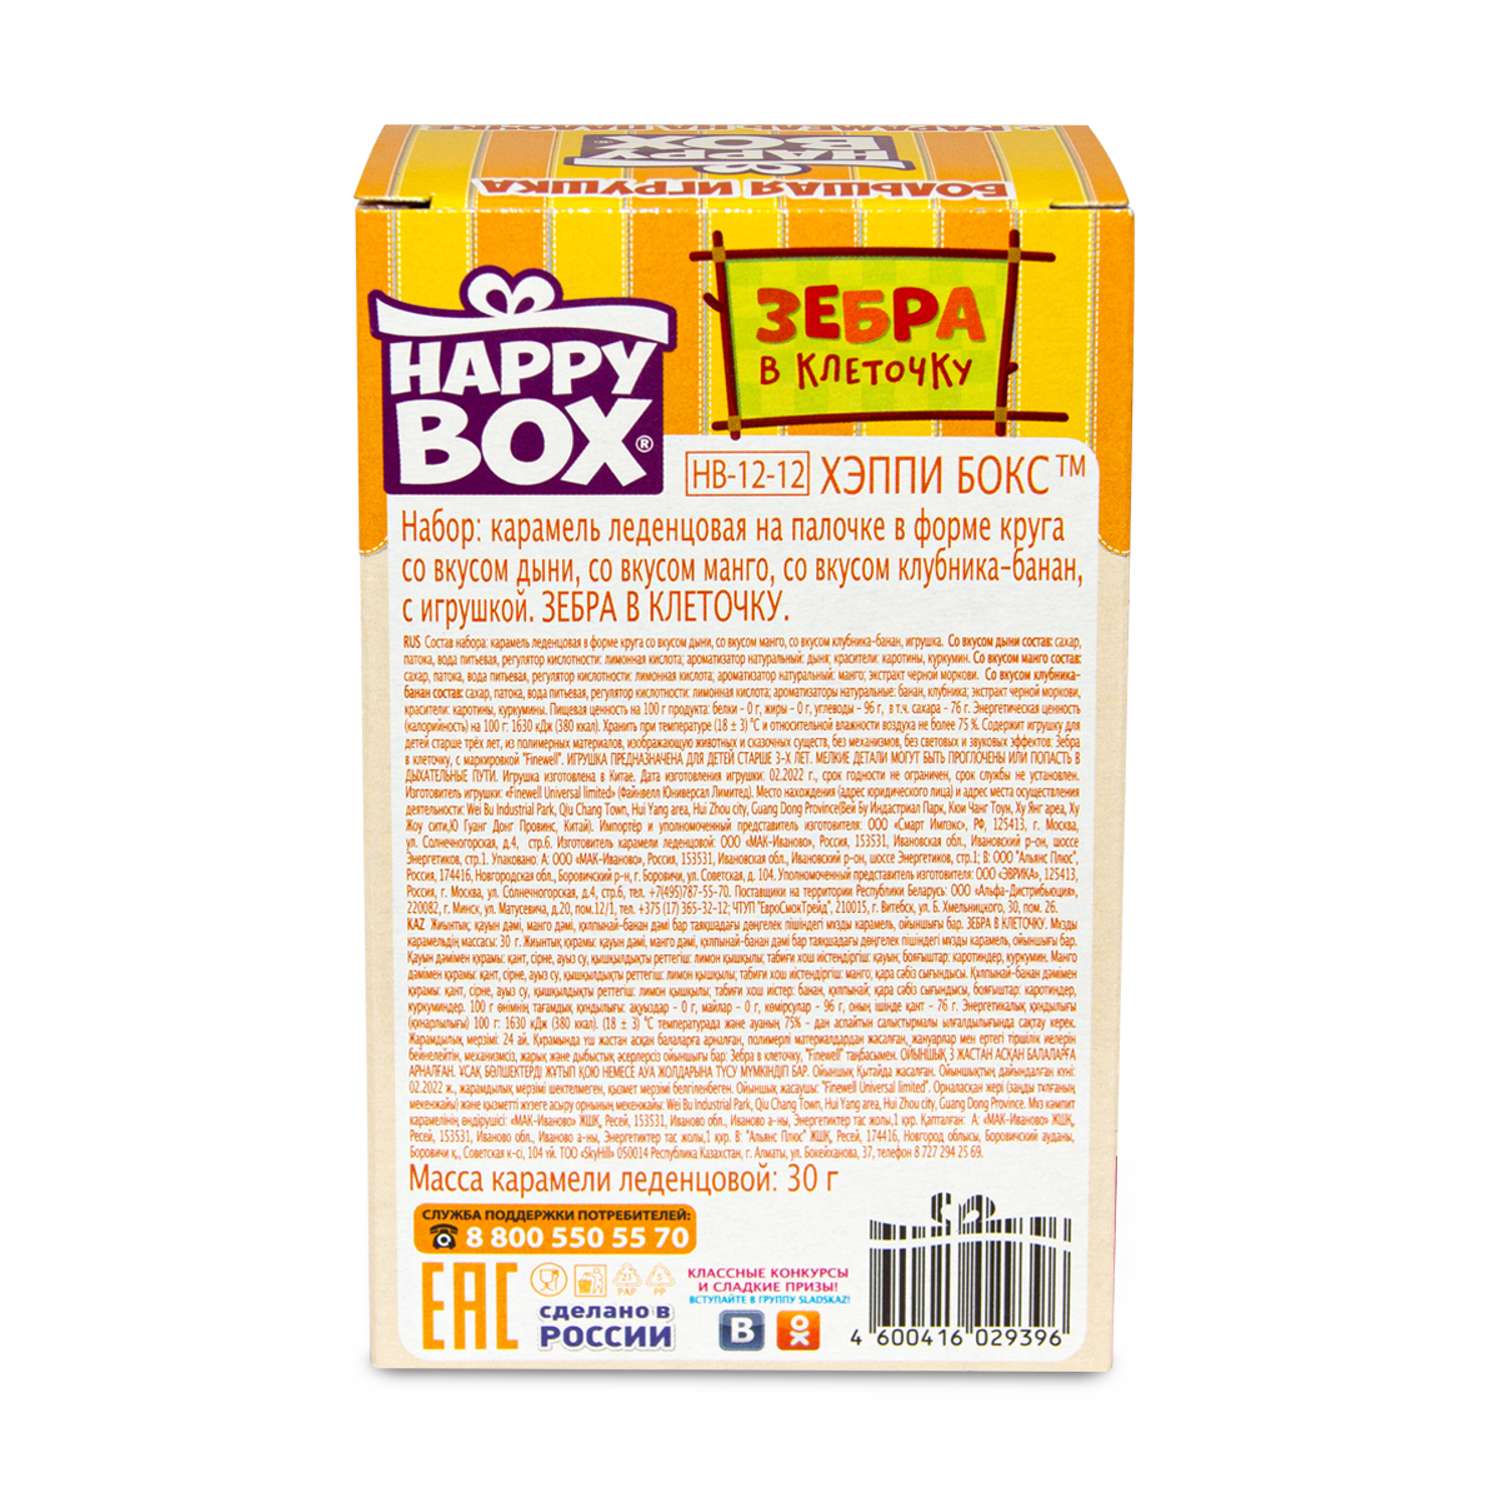 Леденцы с игрушкой Сладкая сказка Happy box зебра в клеточку 30г - фото 9